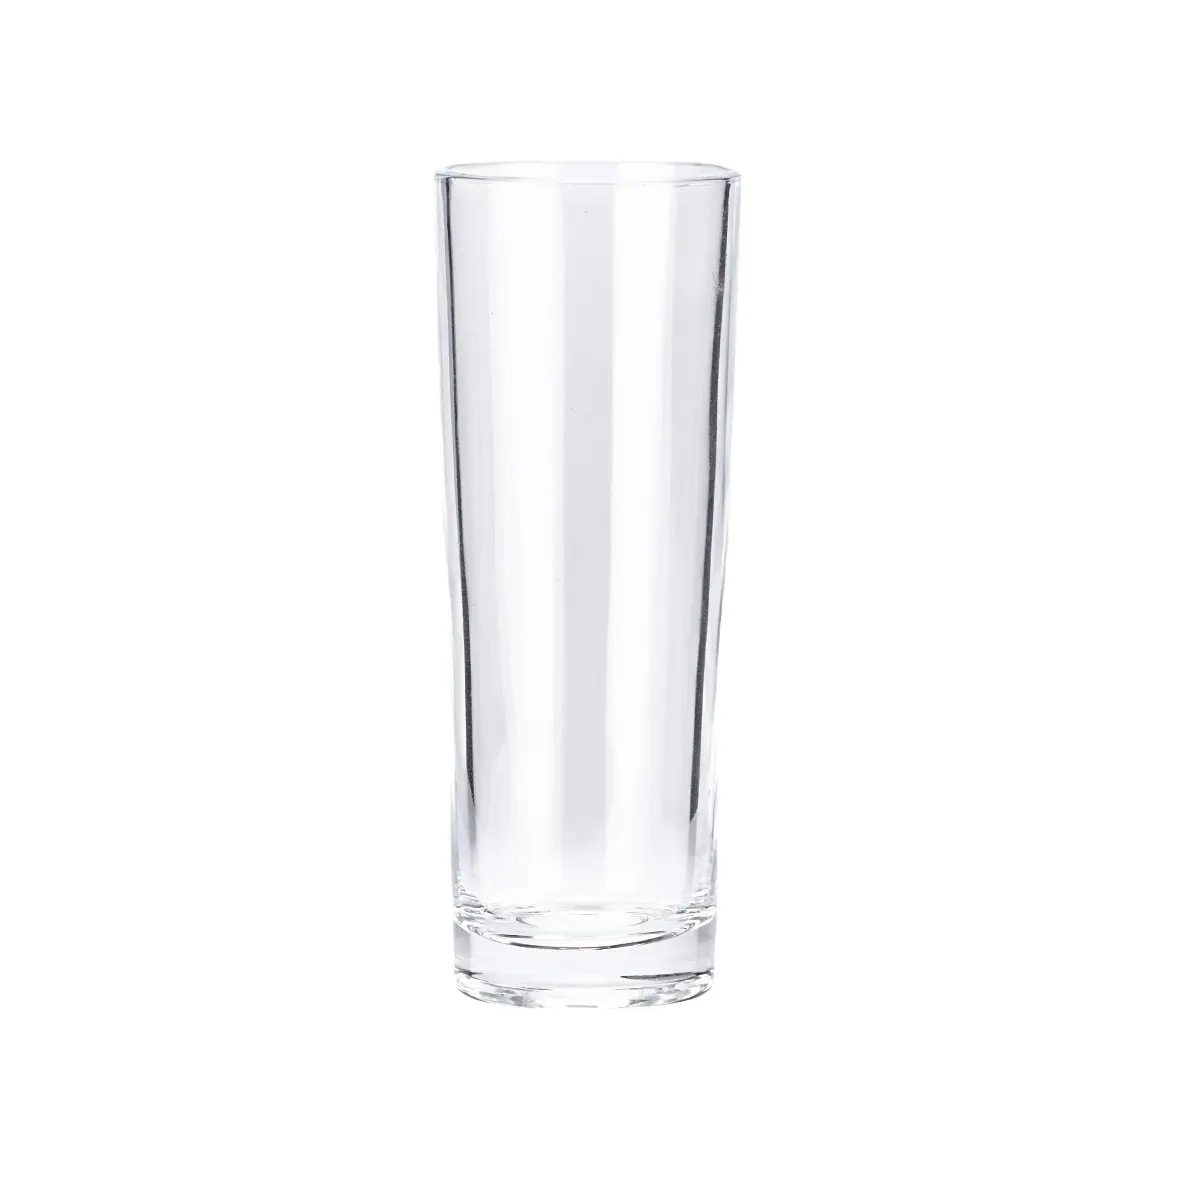 Tasse à jus transparente lisse 250ml, pour jus, en verre, livraison gratuite